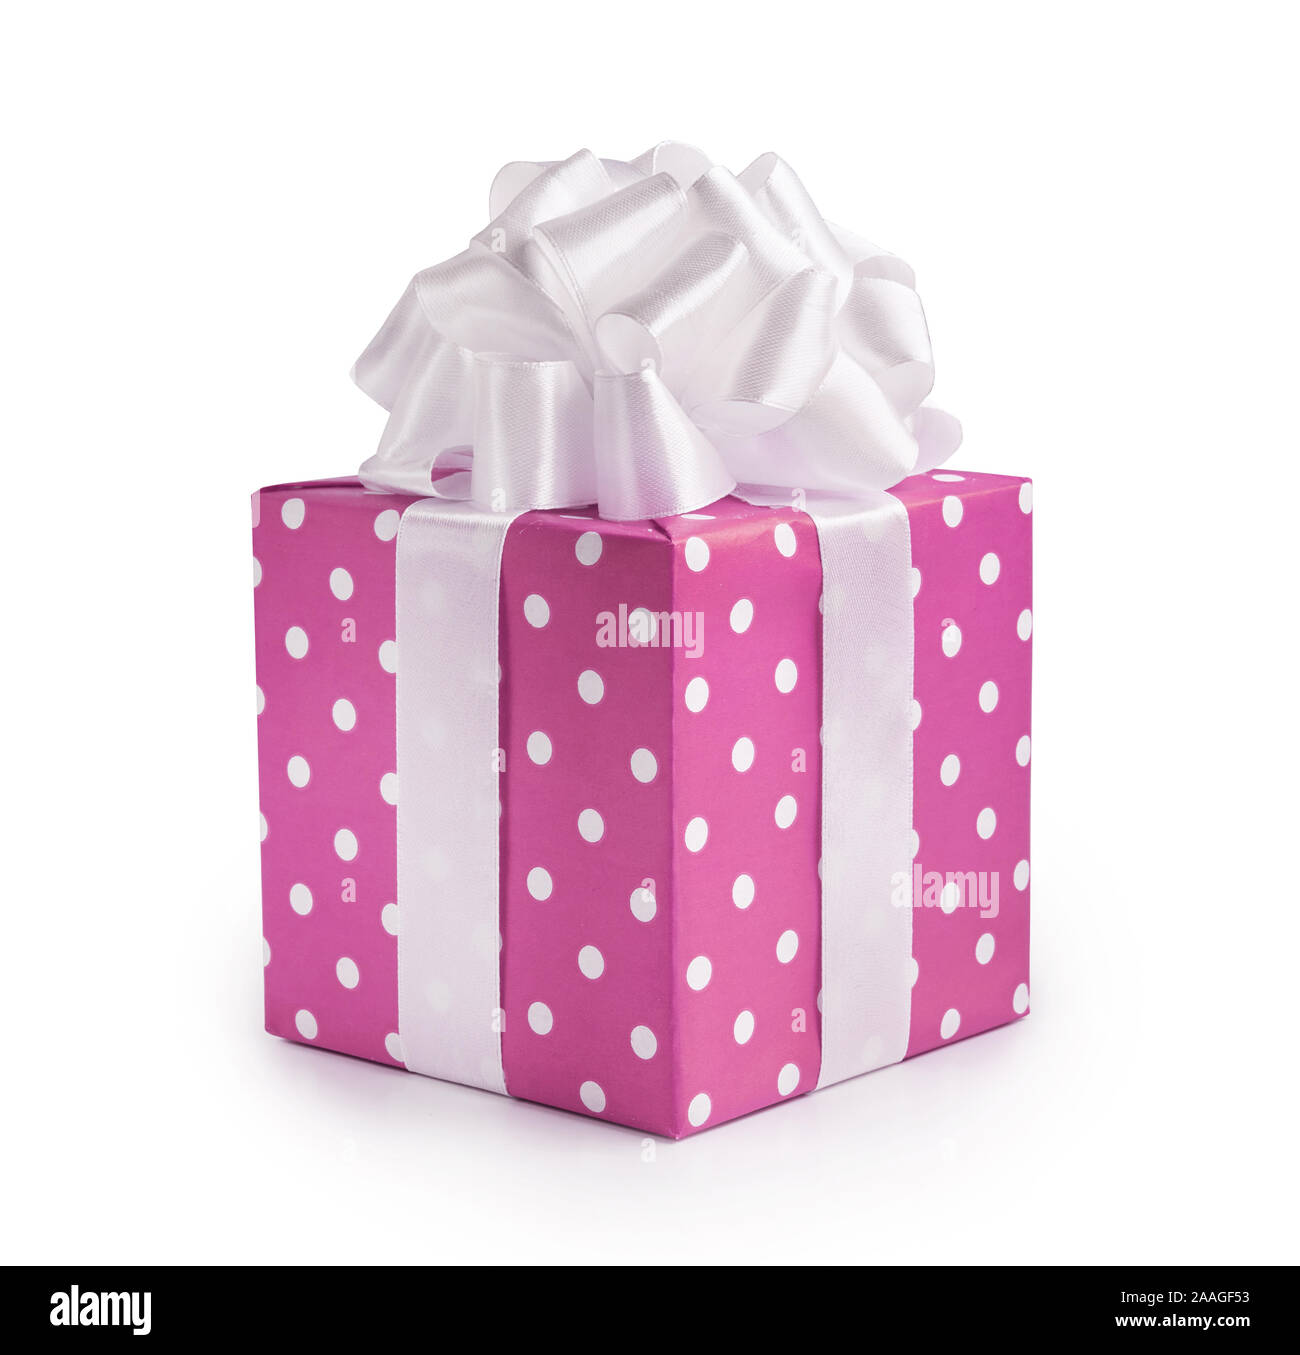 Schöne dekorative rosa Geschenkkarton mit weißen Bogen. Einen glücklichen Tag der Frau oder zu Weihnachten und Neujahr. Stockfoto